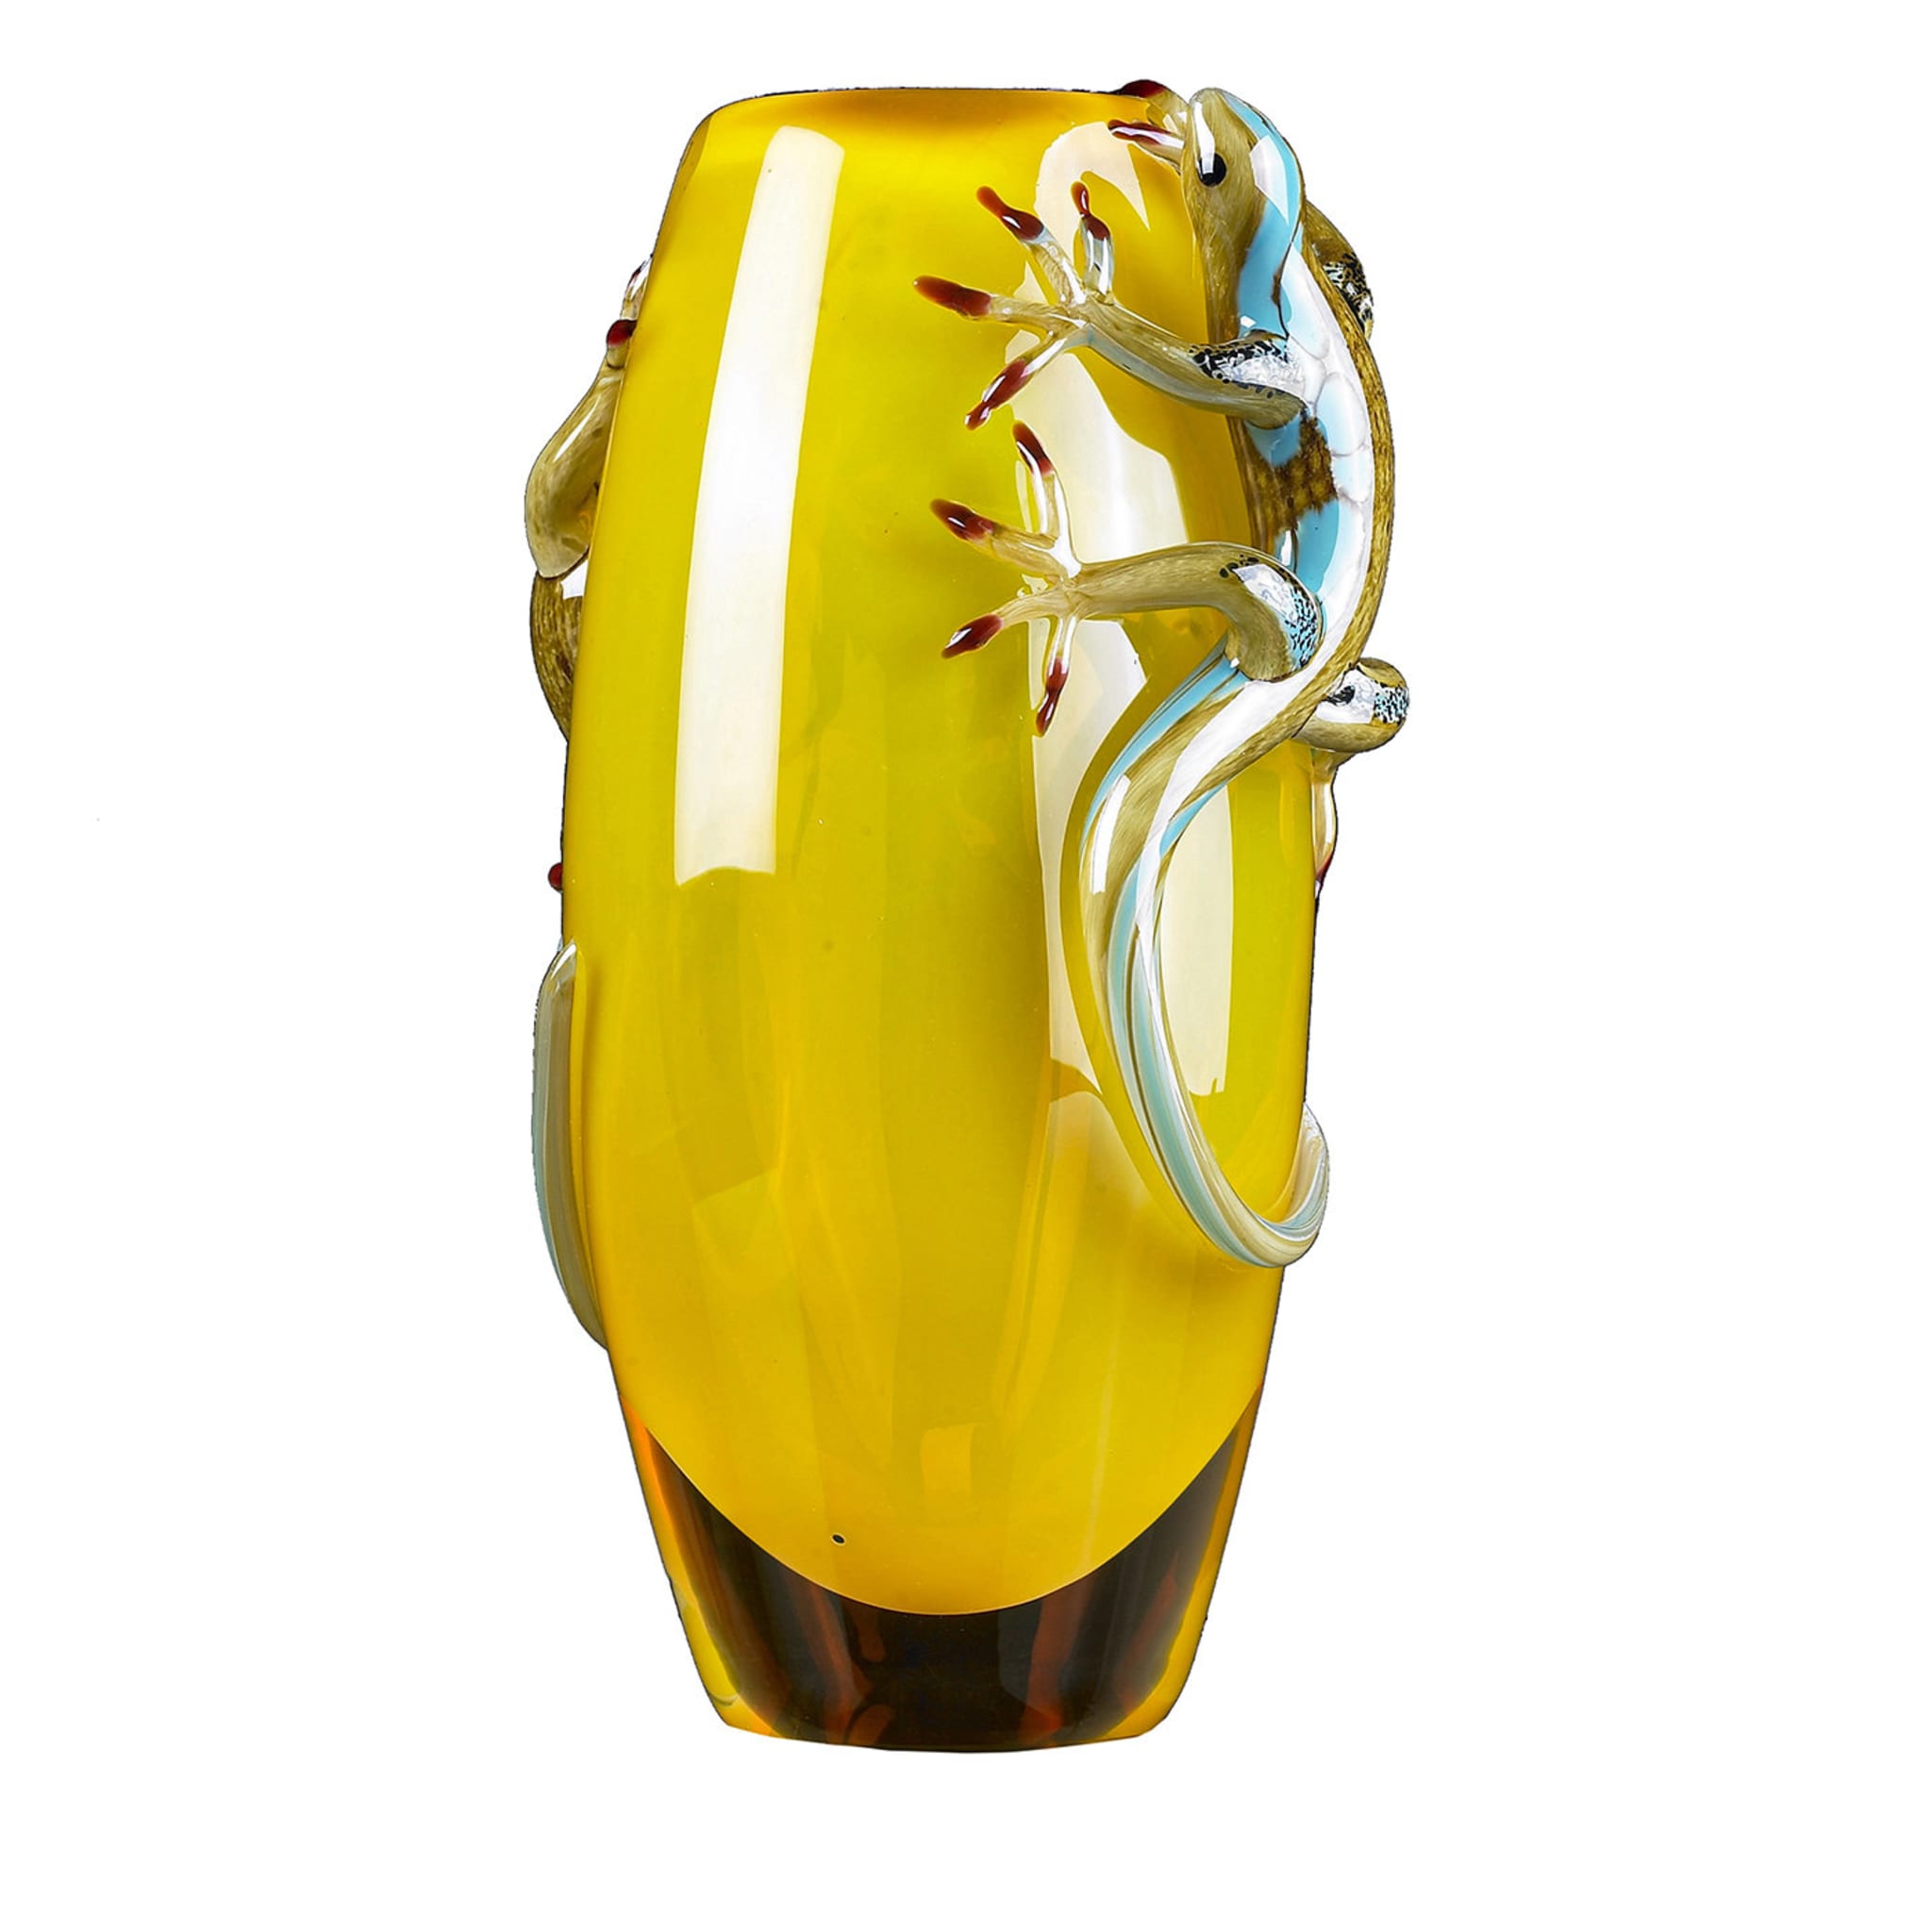 Vaso giallo con 2 gechi - Vista principale